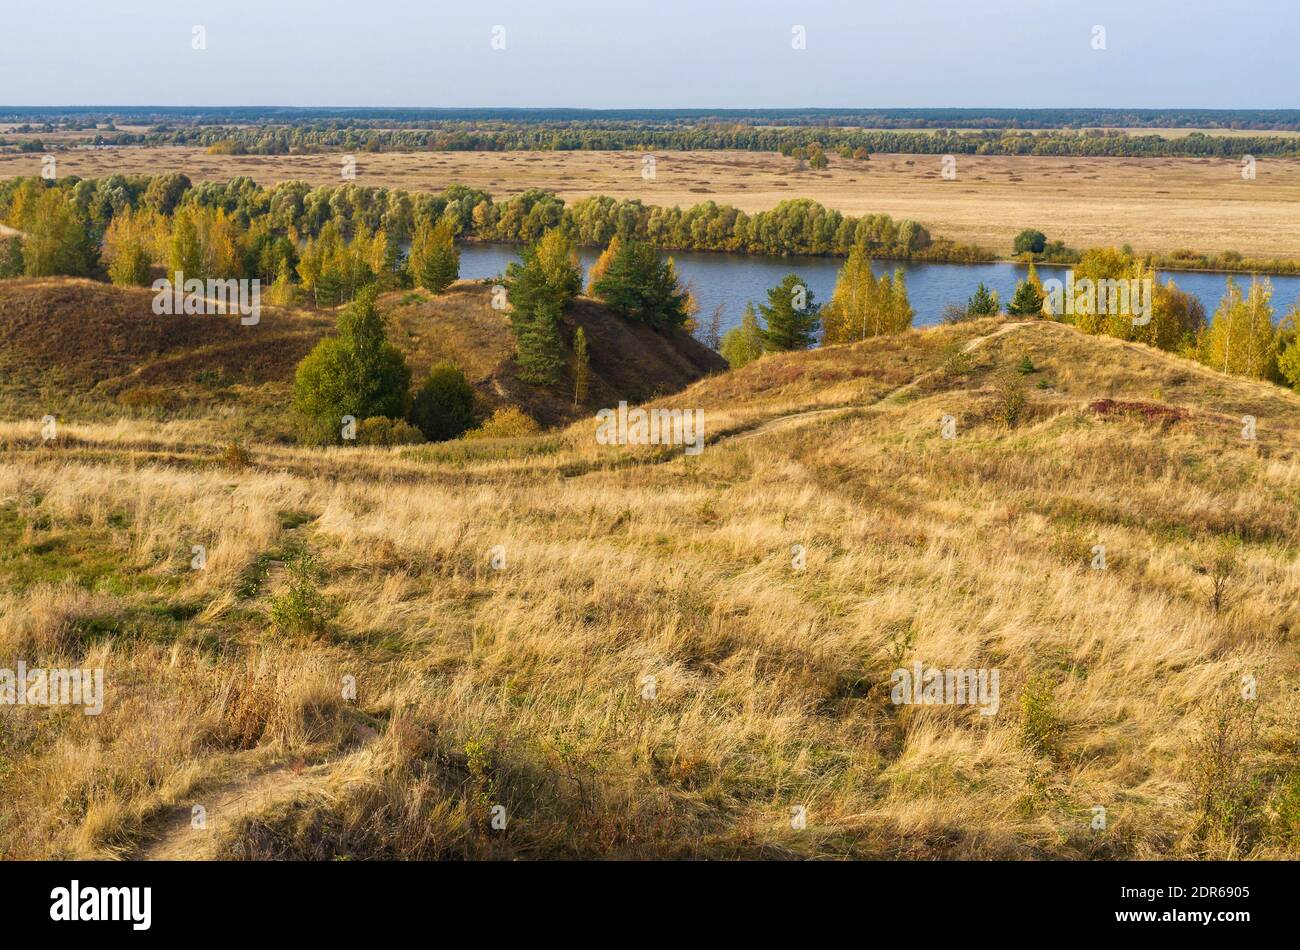 Paysage d'automne avec des arbres, des collines et une rivière. Vue russe typique dans les riches couleurs dorées et vertes. Banque D'Images